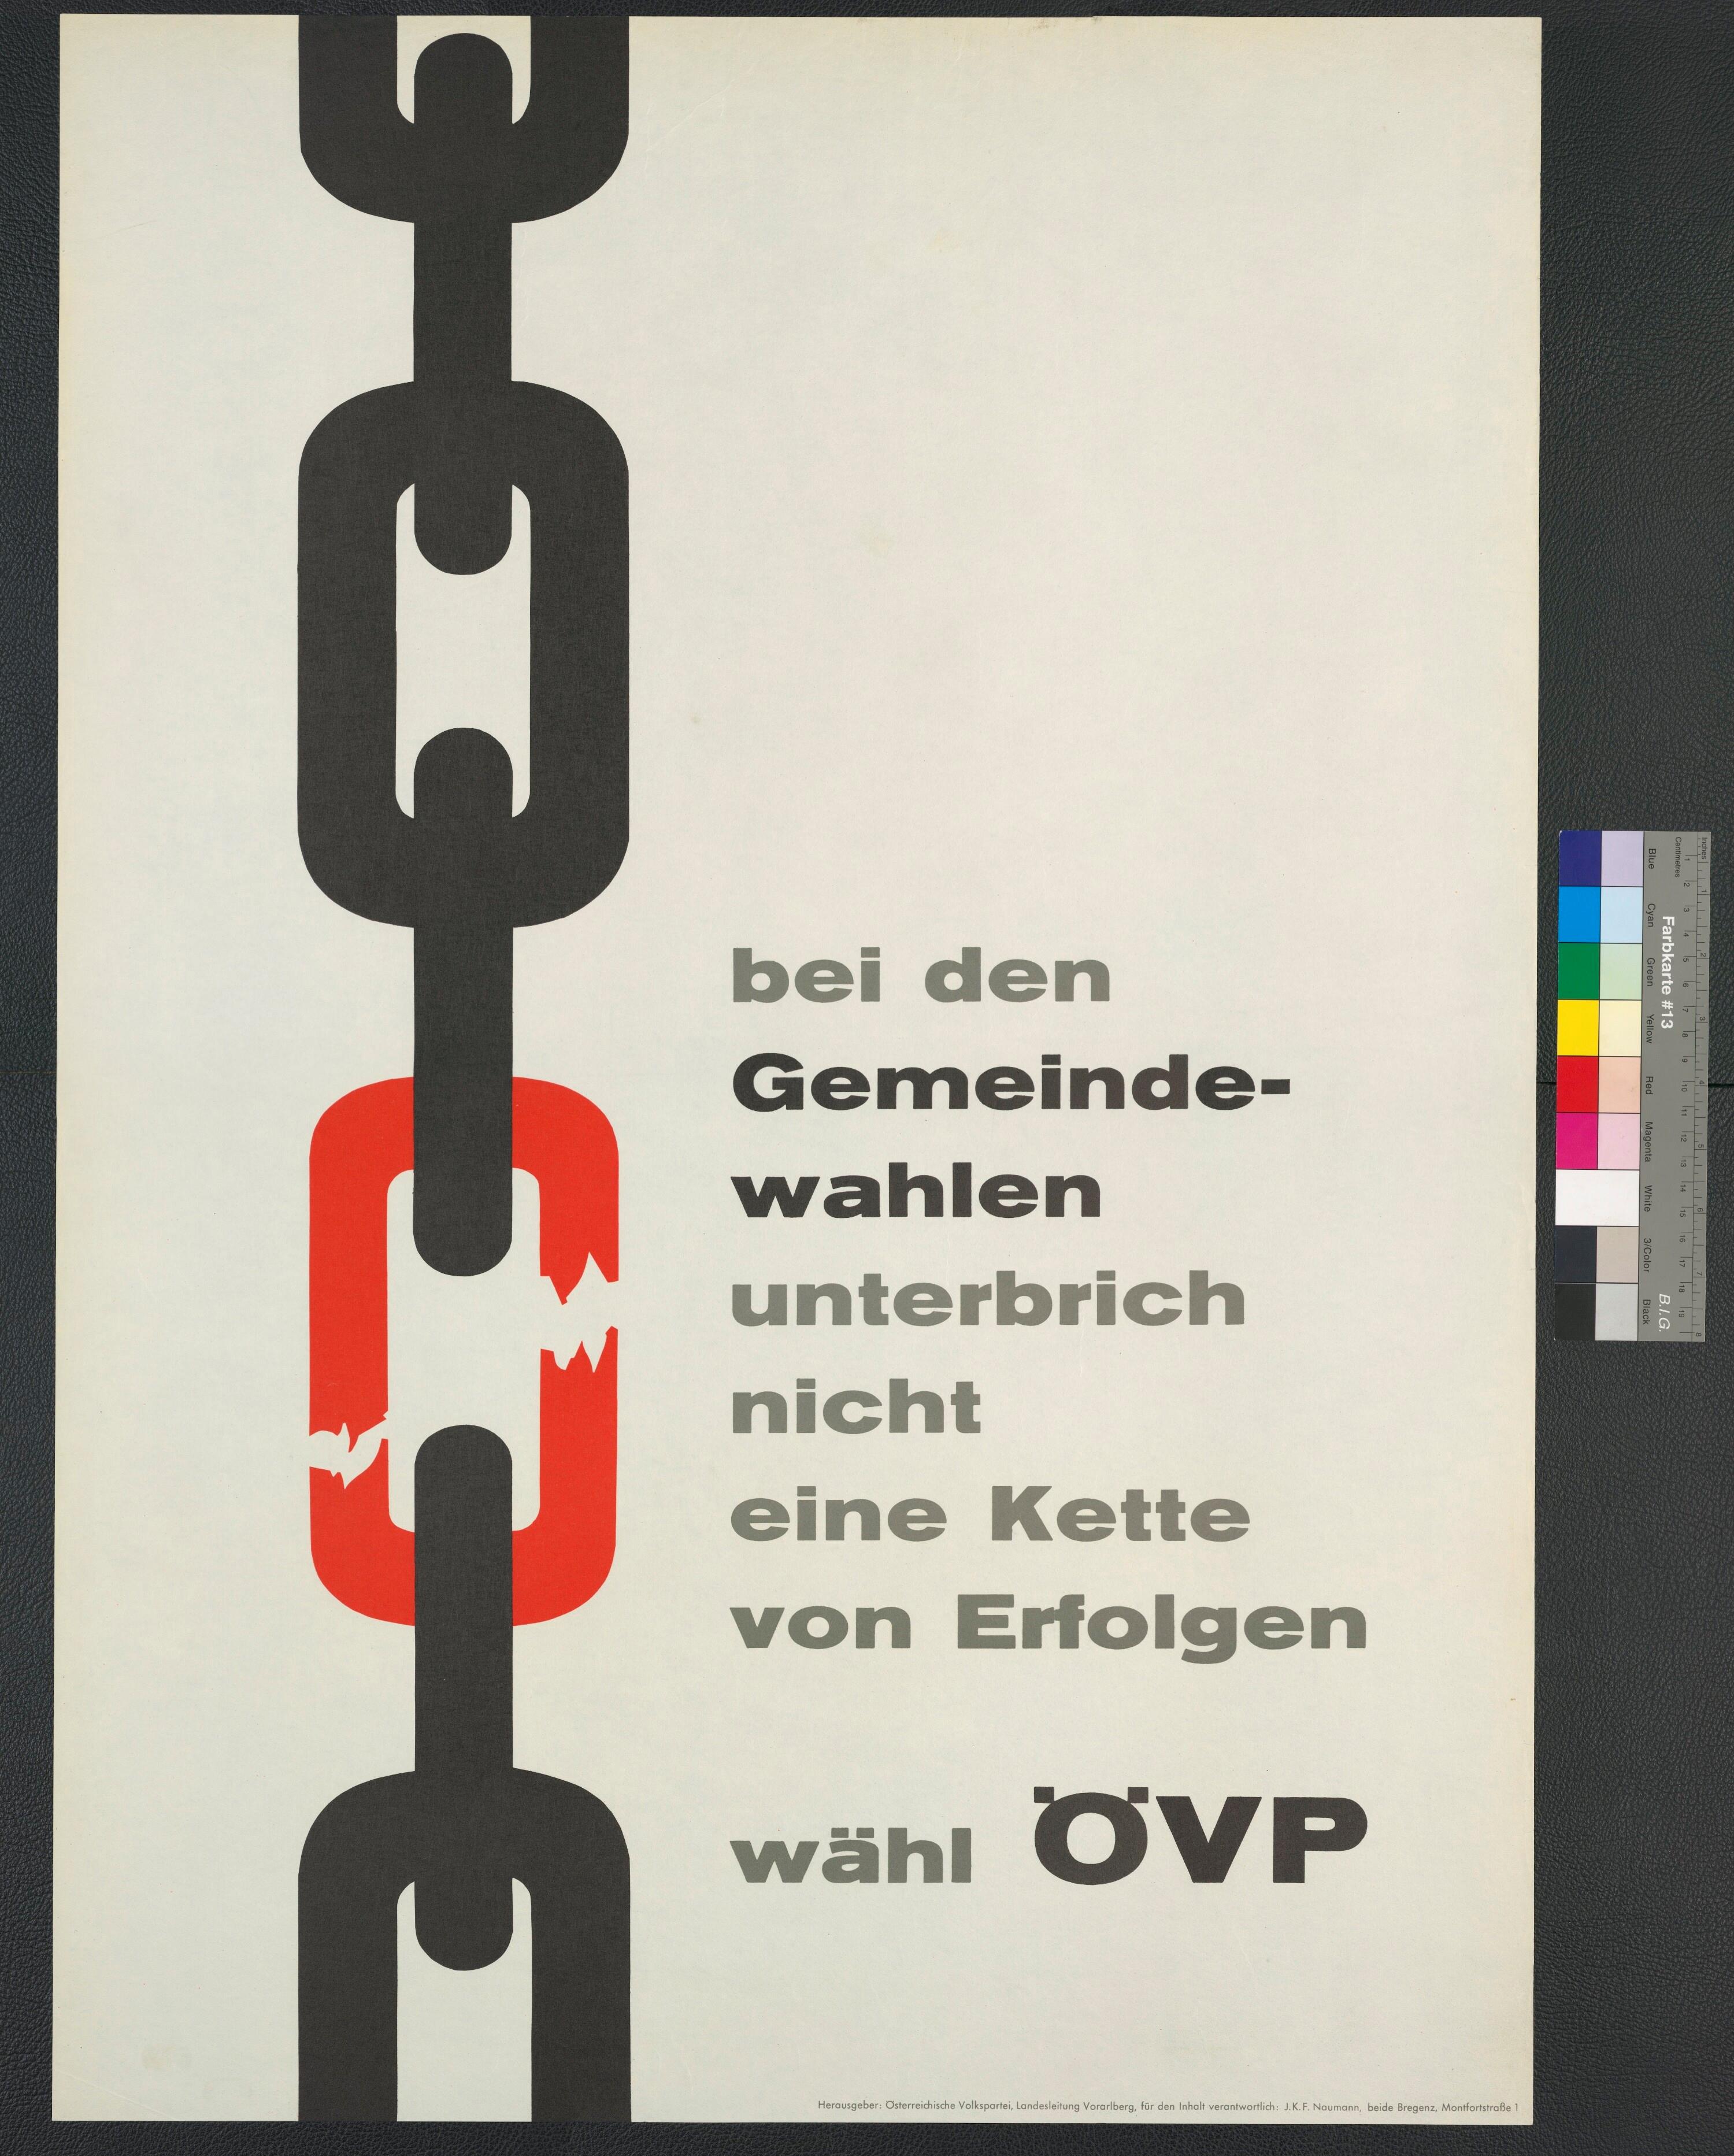 Wahlplakat der Österreichischen Volkspartei></div>


    <hr>
    <div class=